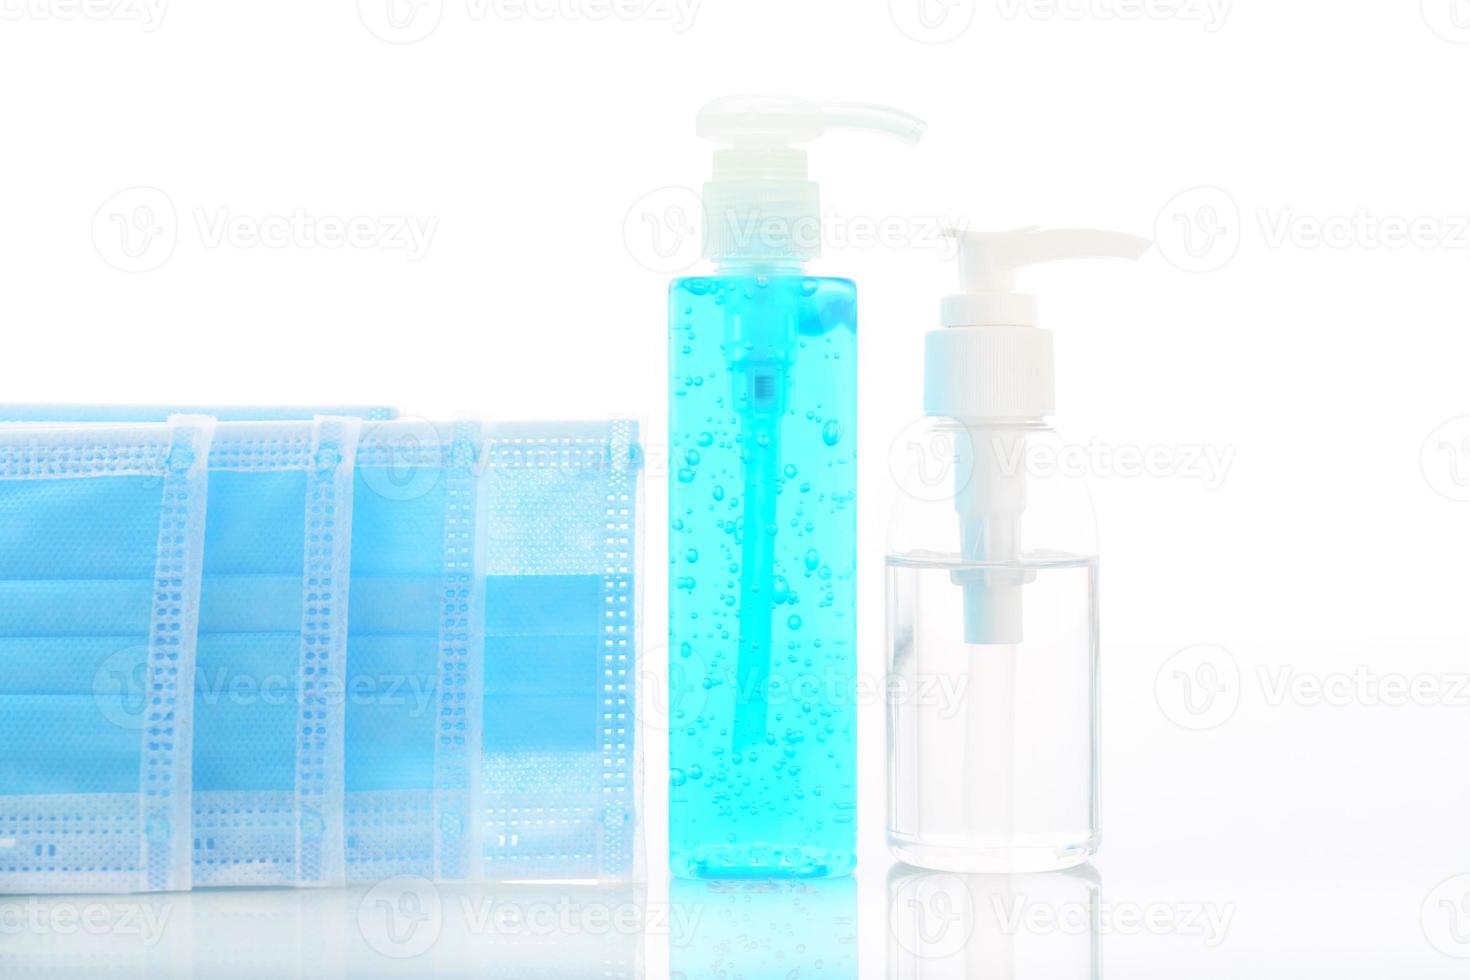 https://static.vecteezy.com/ti/fotos-kostenlos/p1/11820201-alkohol-gel-flaschen-desinfektionsmittel-fur-hande-und-medizinische-gesichtsmasken-foto.jpg